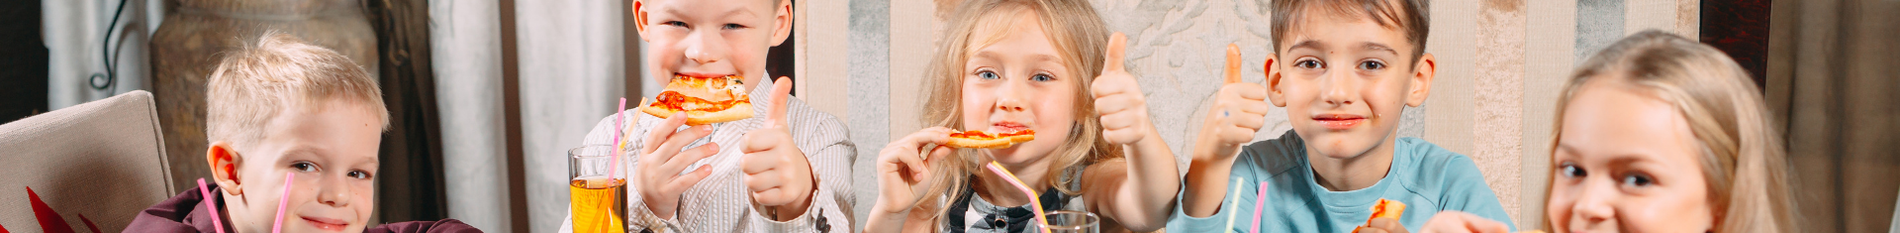 Blog-Banner-7-ways-to-make-your-restaurant-kid-friendly